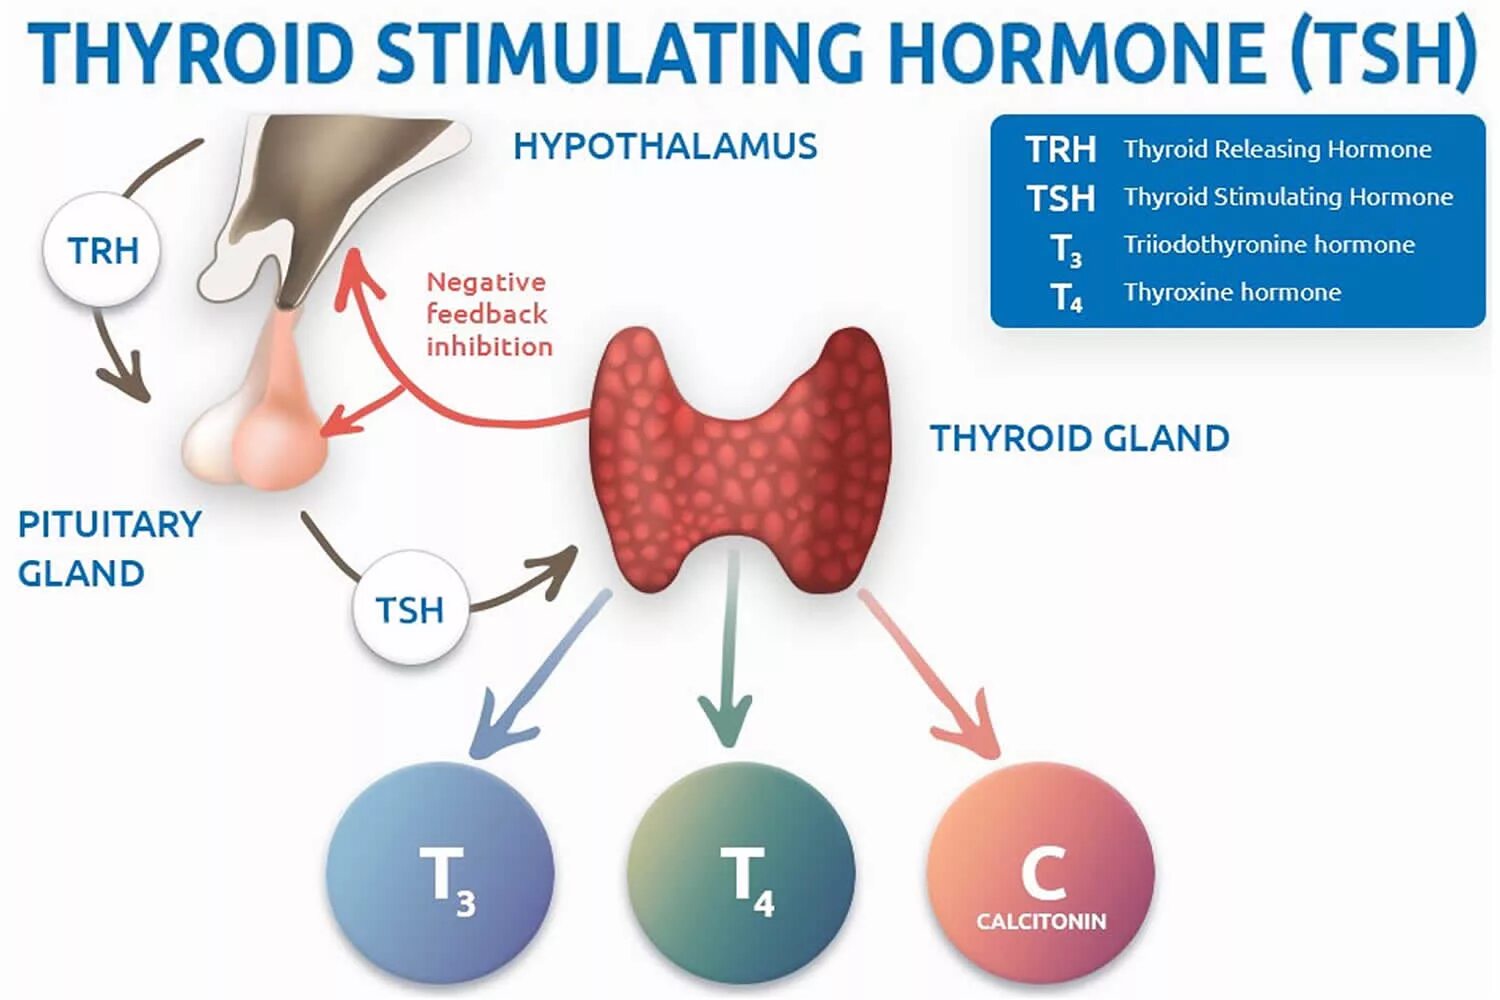 ТТГ гормон 4.60. Гормоны щитовидной железы ТТГ И т4. ТТГ влияет на функцию щитовидной железы по принципу. Тиреотропный гормон вырабатывается гормонов. Гормон тиреотропный за что отвечает у женщин